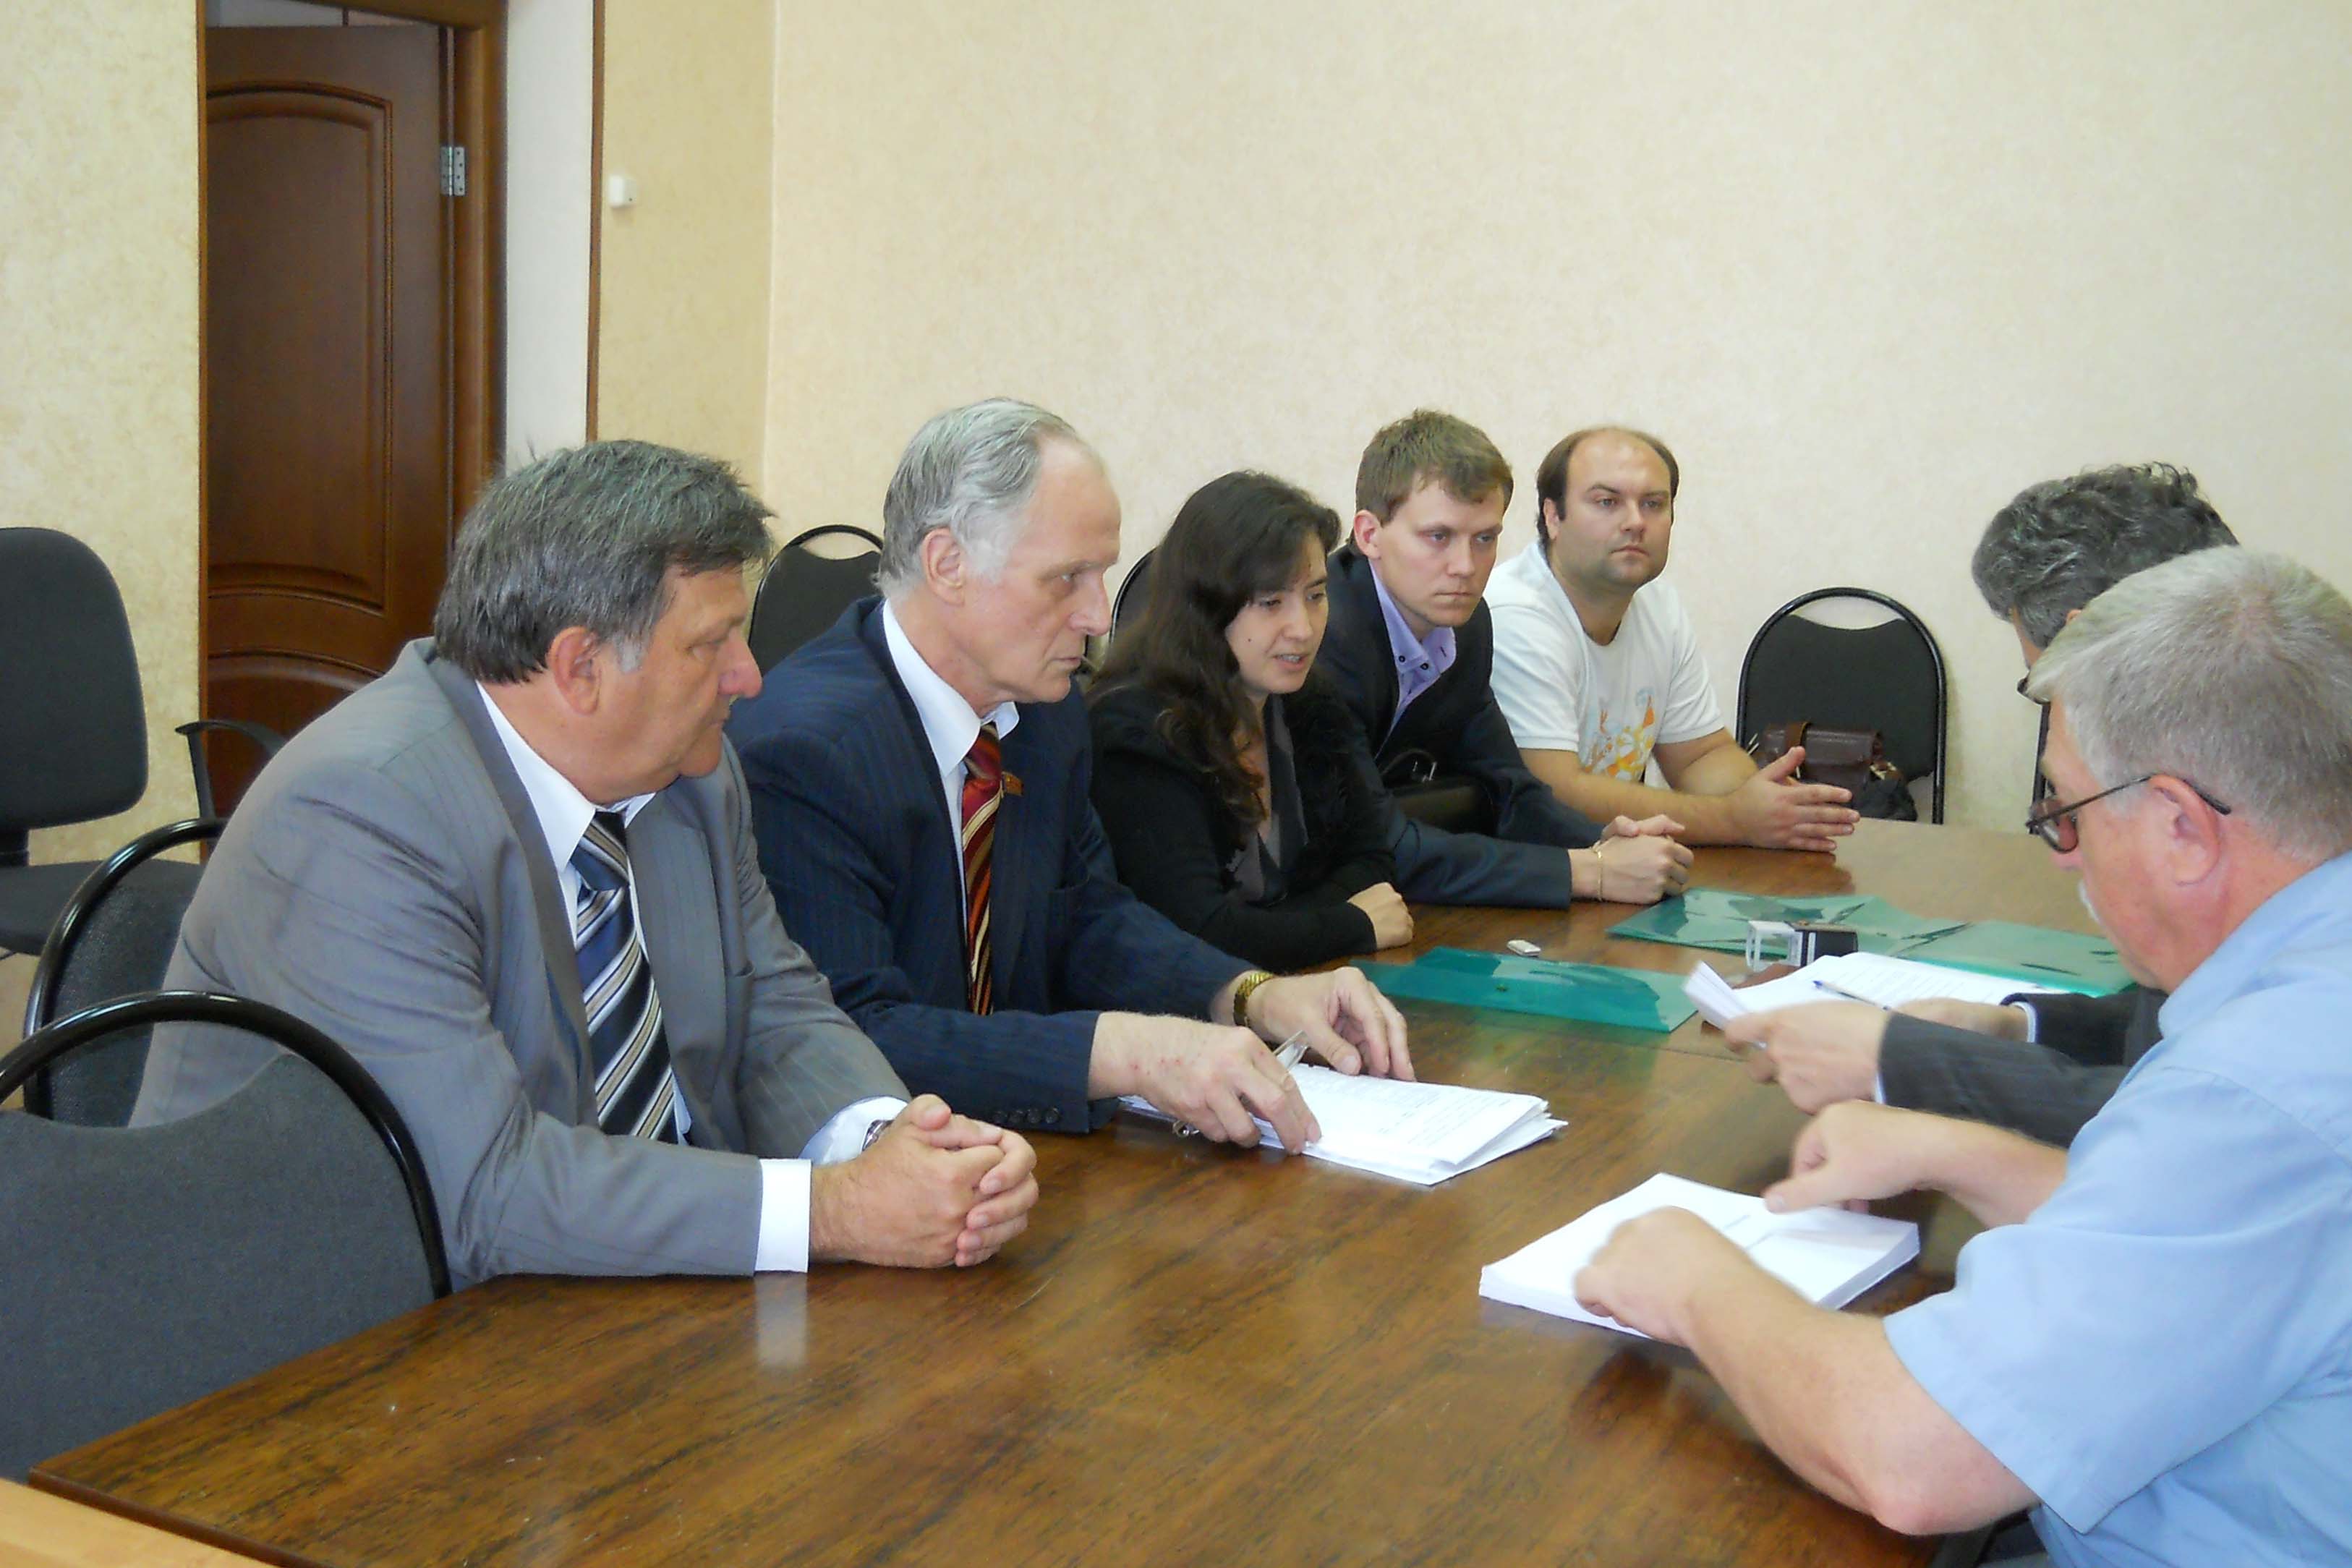 Кандидат в губернаторы от КПРФ Федоткин В.Н. подал документы для регистрации в избирательную комиссию Рязанской области.